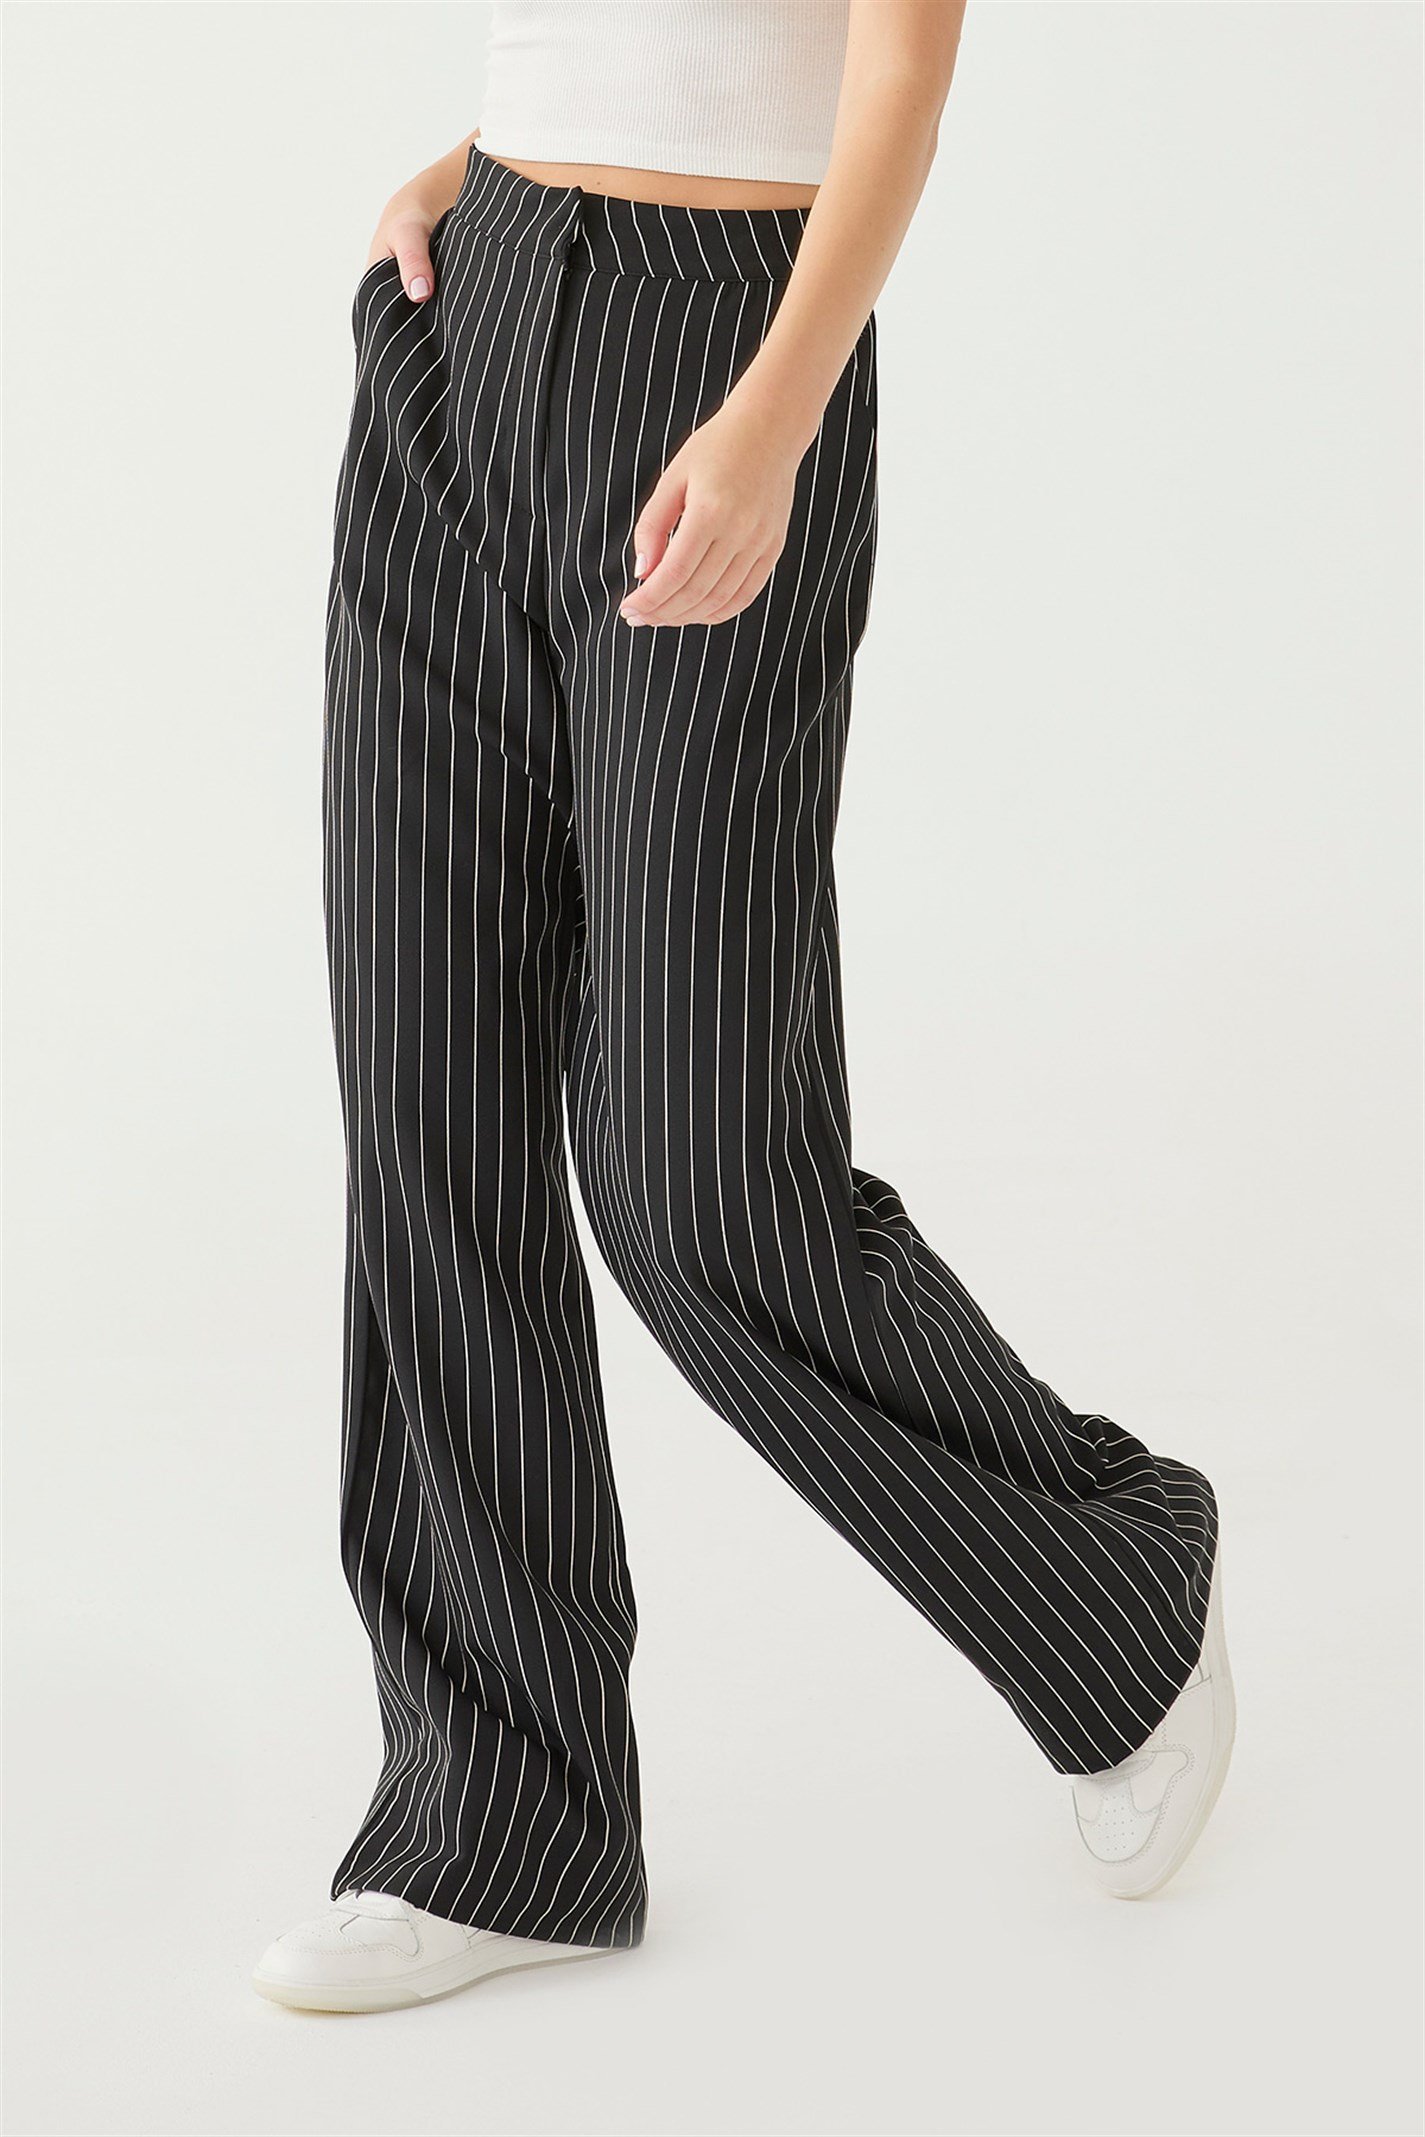 Siyah Çizgili Pantolon | Suud Collection